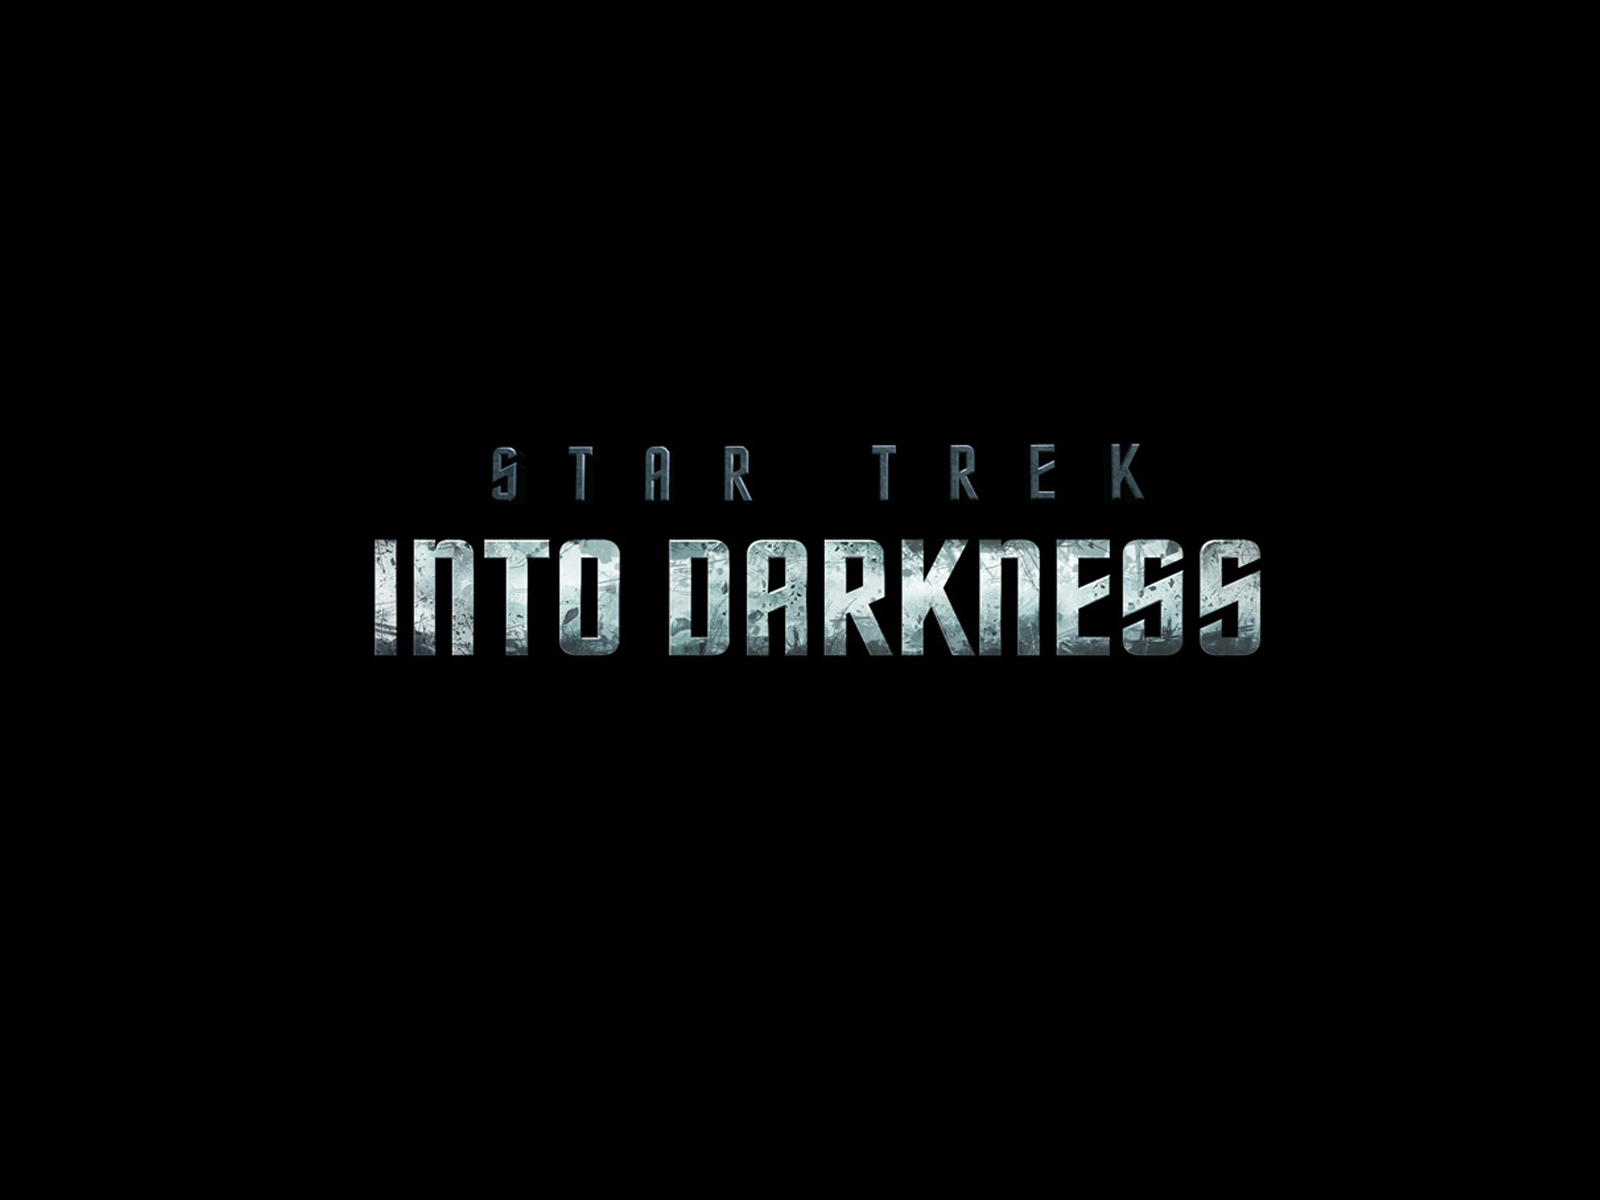 https://blogger.googleusercontent.com/img/b/R29vZ2xl/AVvXsEjwPYpw6noT8kd1cYvdCYMlyhF0Szo4kApqnzUjdDzAJMjbu1yb7zoi4D1g4CMQZhyuo3BCu6yV560n24eXorCLBlChBtg6eraOmCogPBAi3ZUvi3dwrbHTbae2rT0v1GS3nJ4v78j93y4/s1600/Star-Trek-Into-Darkness-Movie-Logo-HD-Wallpaper_Vvallpaper.Net.jpg